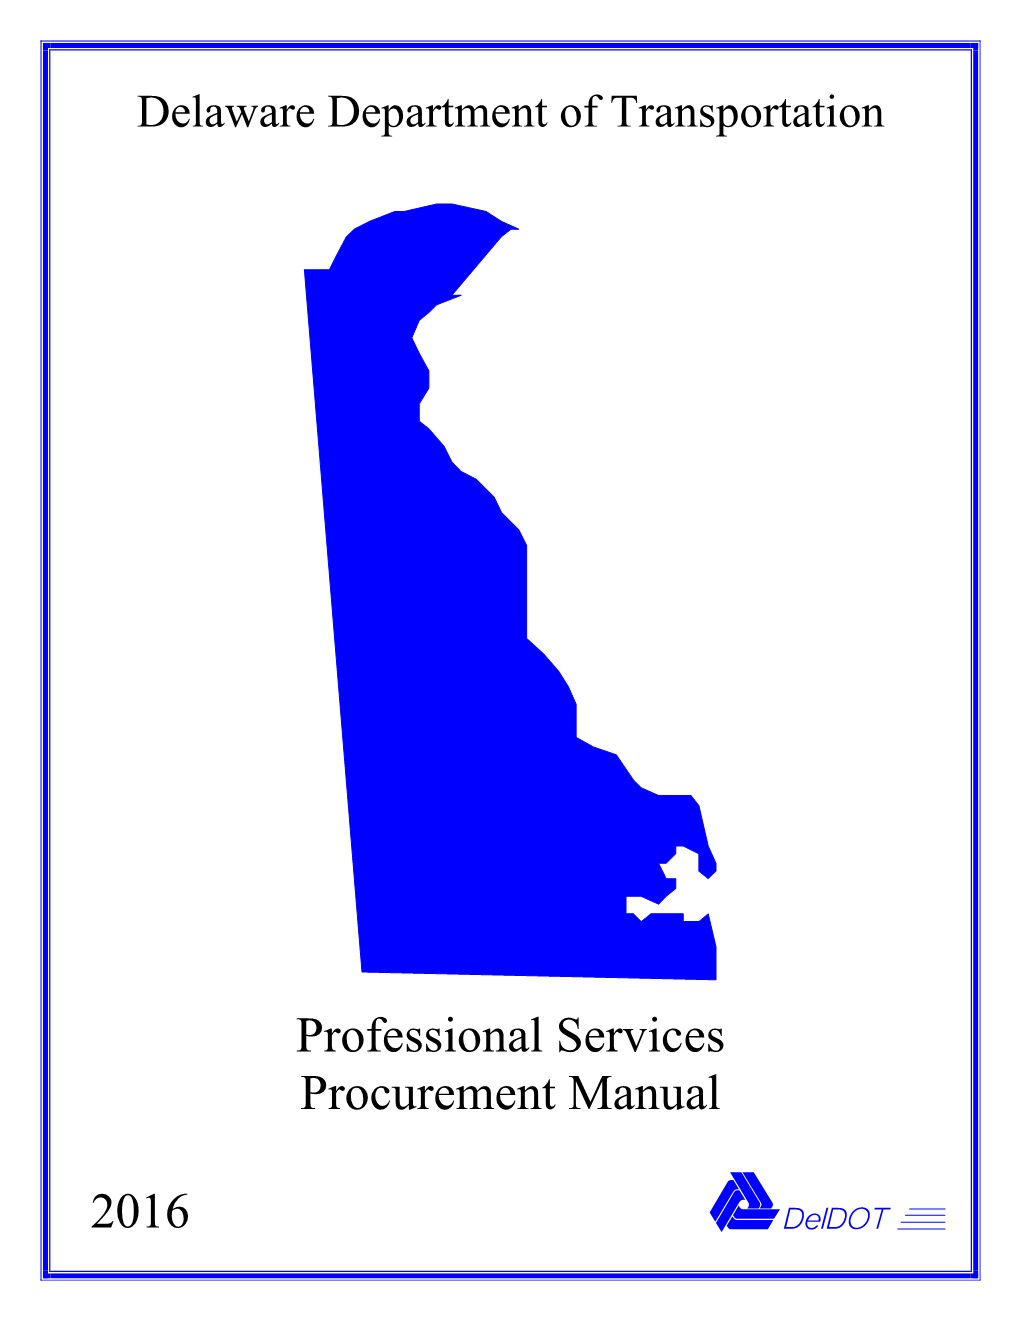 Professional Services Procurement Manual